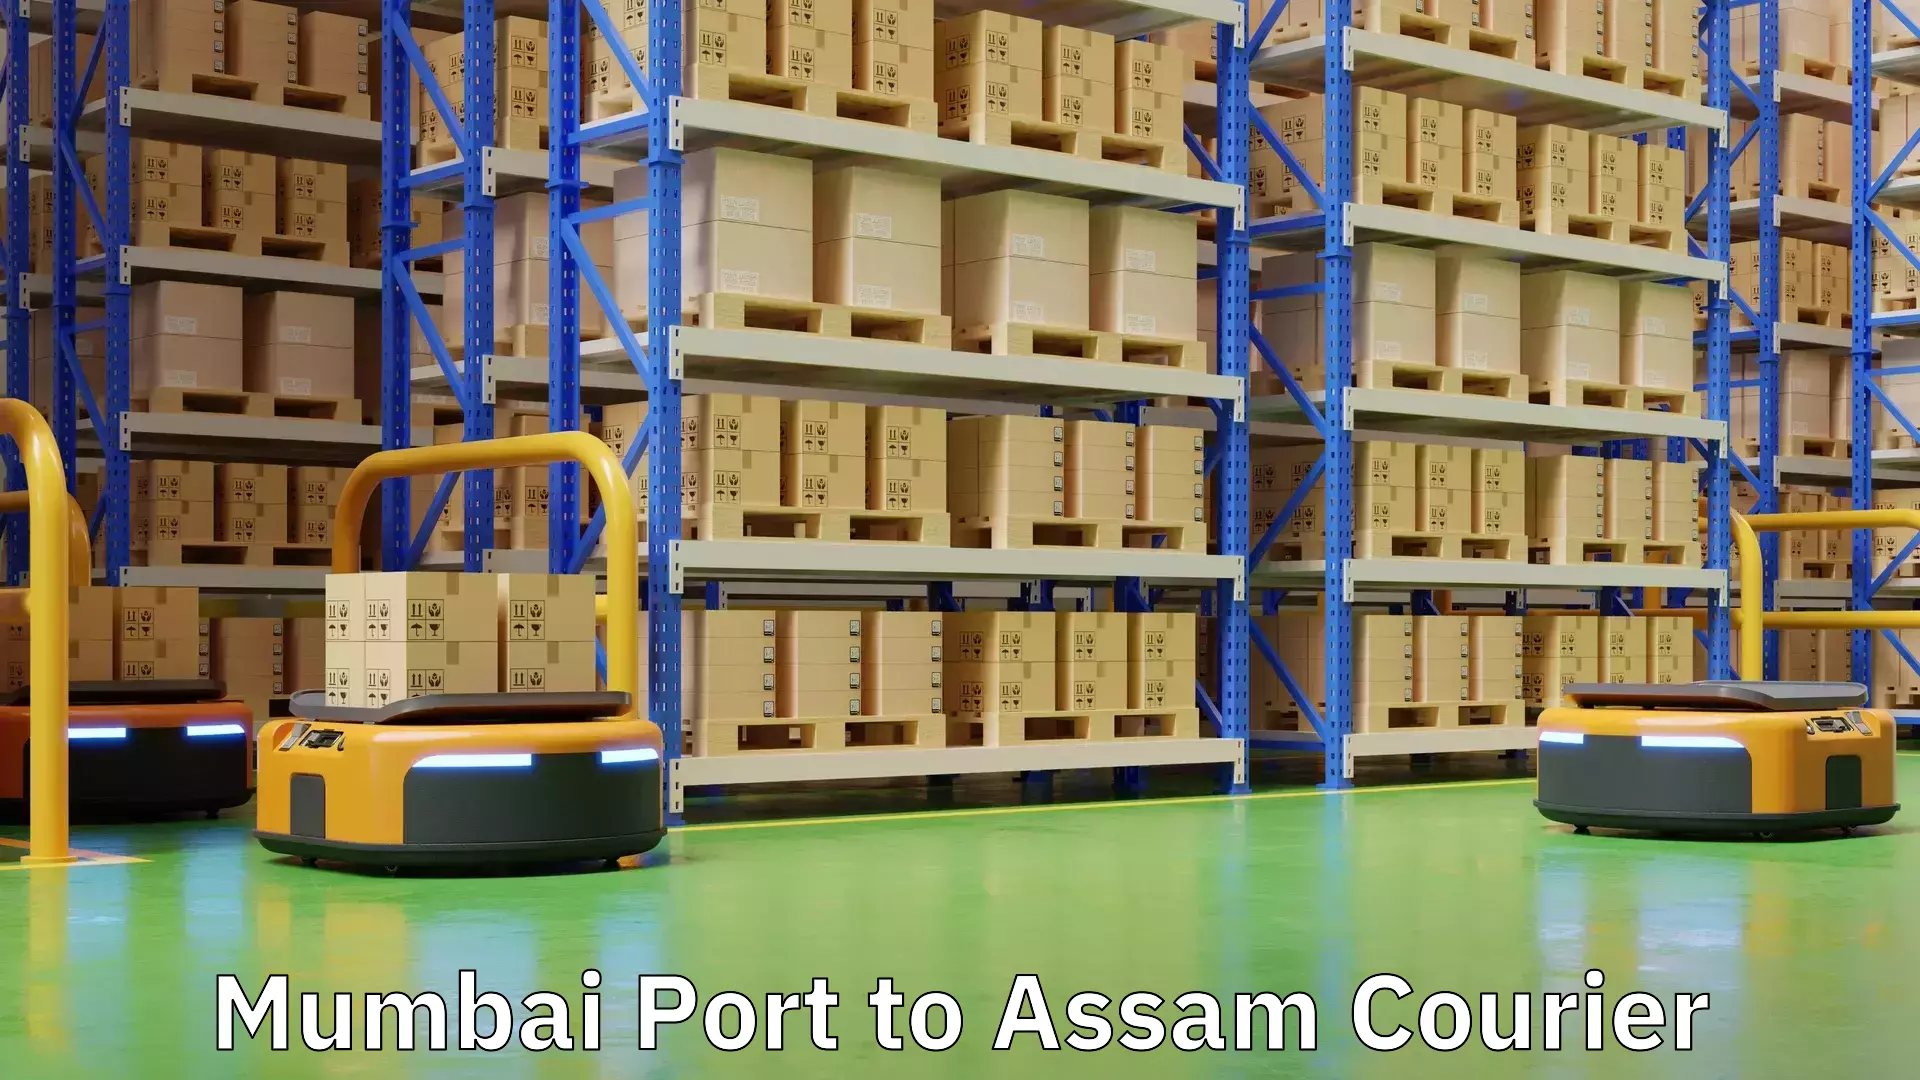 Cargo courier service Mumbai Port to Assam